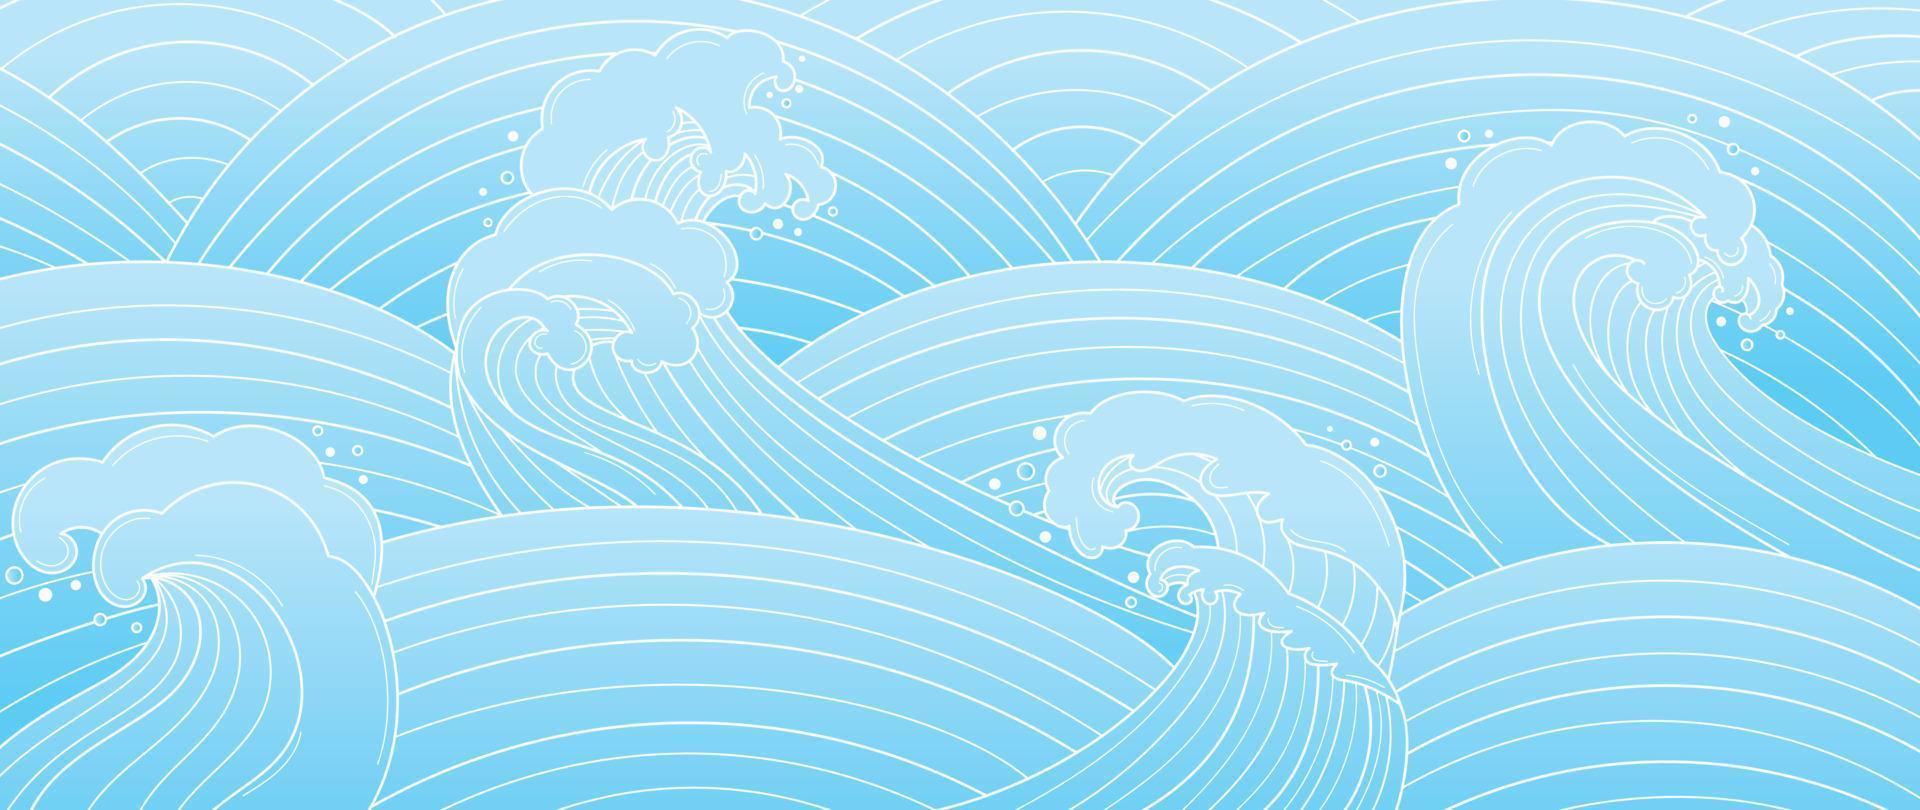 vecteur de modèle de vague japonais traditionnel. dessin au trait dessiné à la main fond de style abstrait vague océanique orientale. illustration de conception d'art pour les impressions, le tissu, l'affiche, la décoration de la maison et le papier peint.